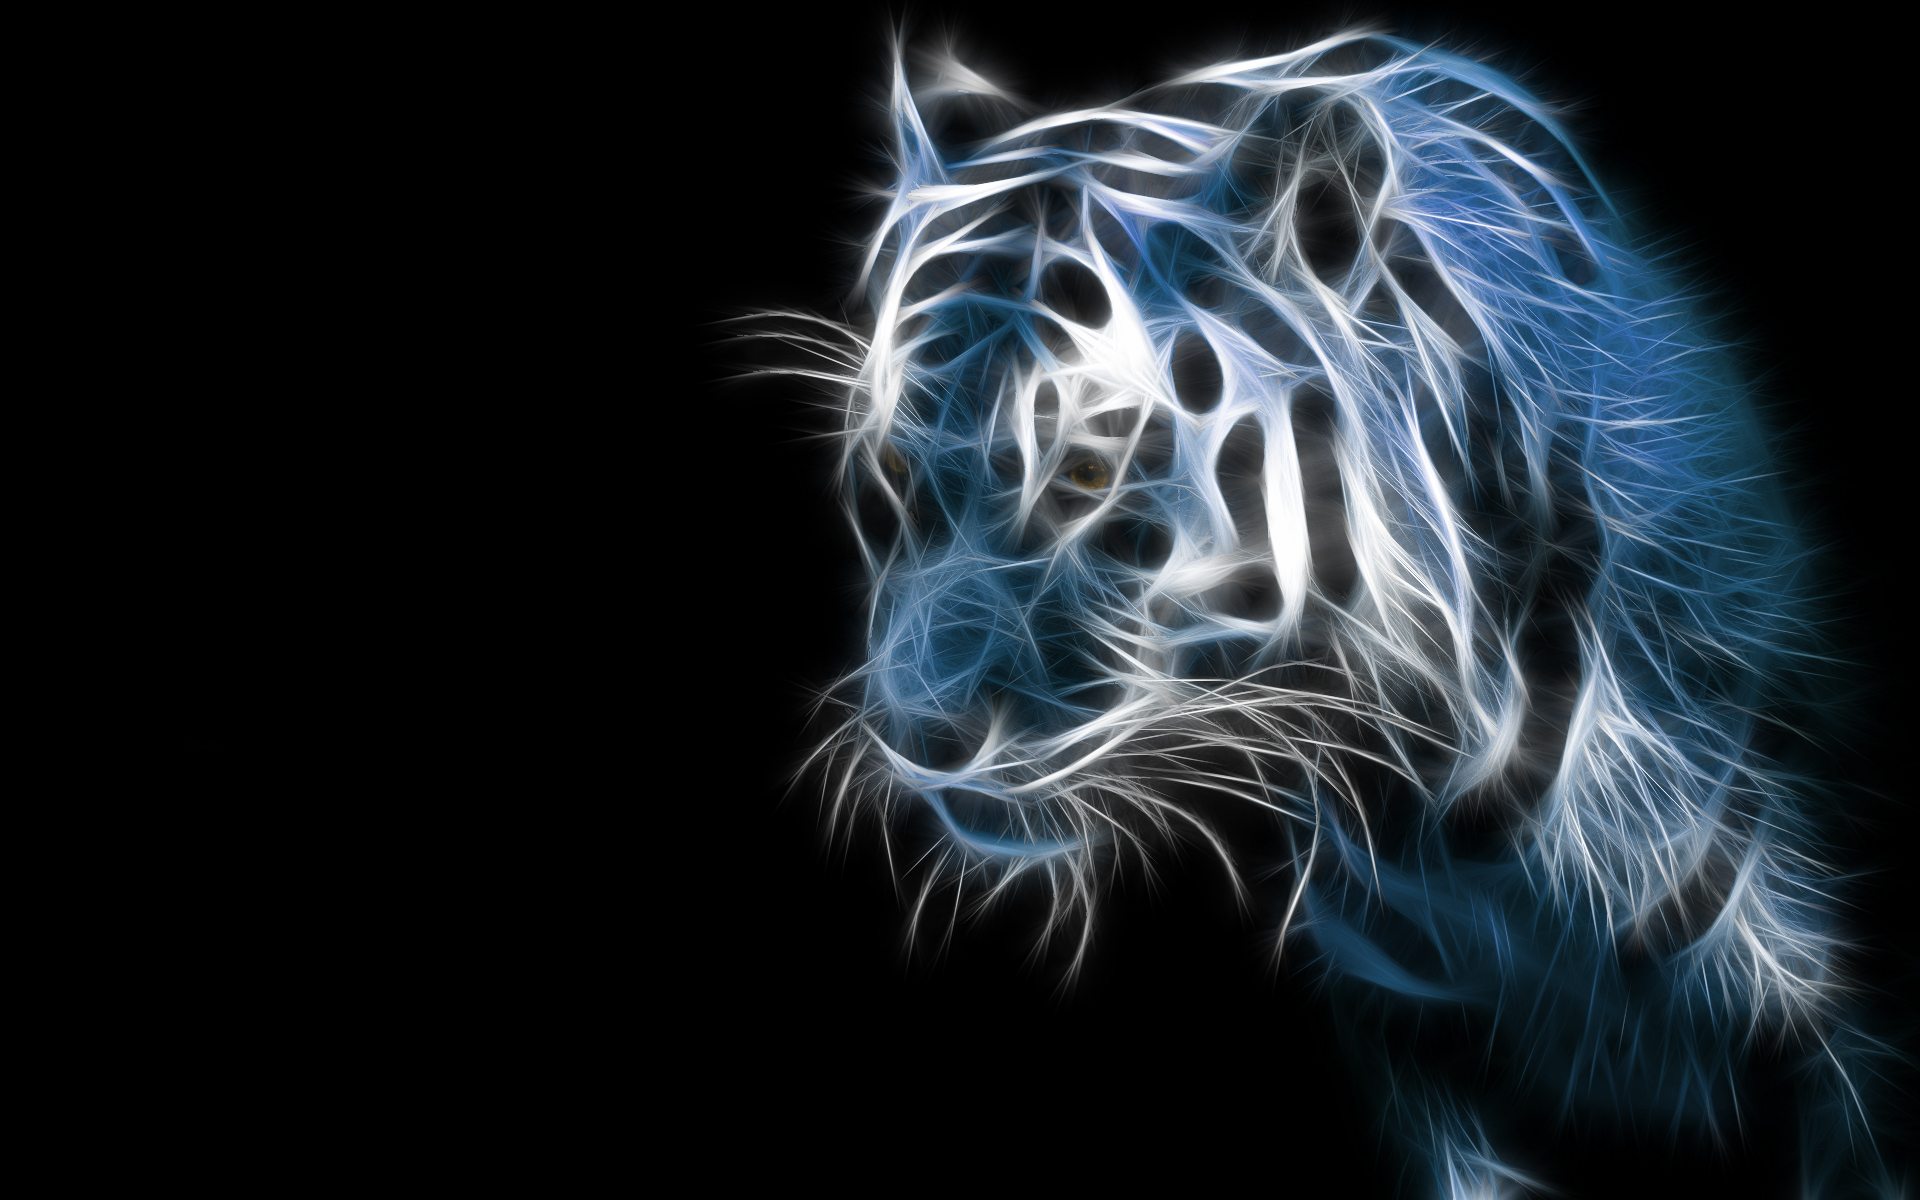 синий, черный цвет, животные, тигры, Fractalius, цифровое искусство, произведение искусства, Digtal искусство - обои на рабочий стол